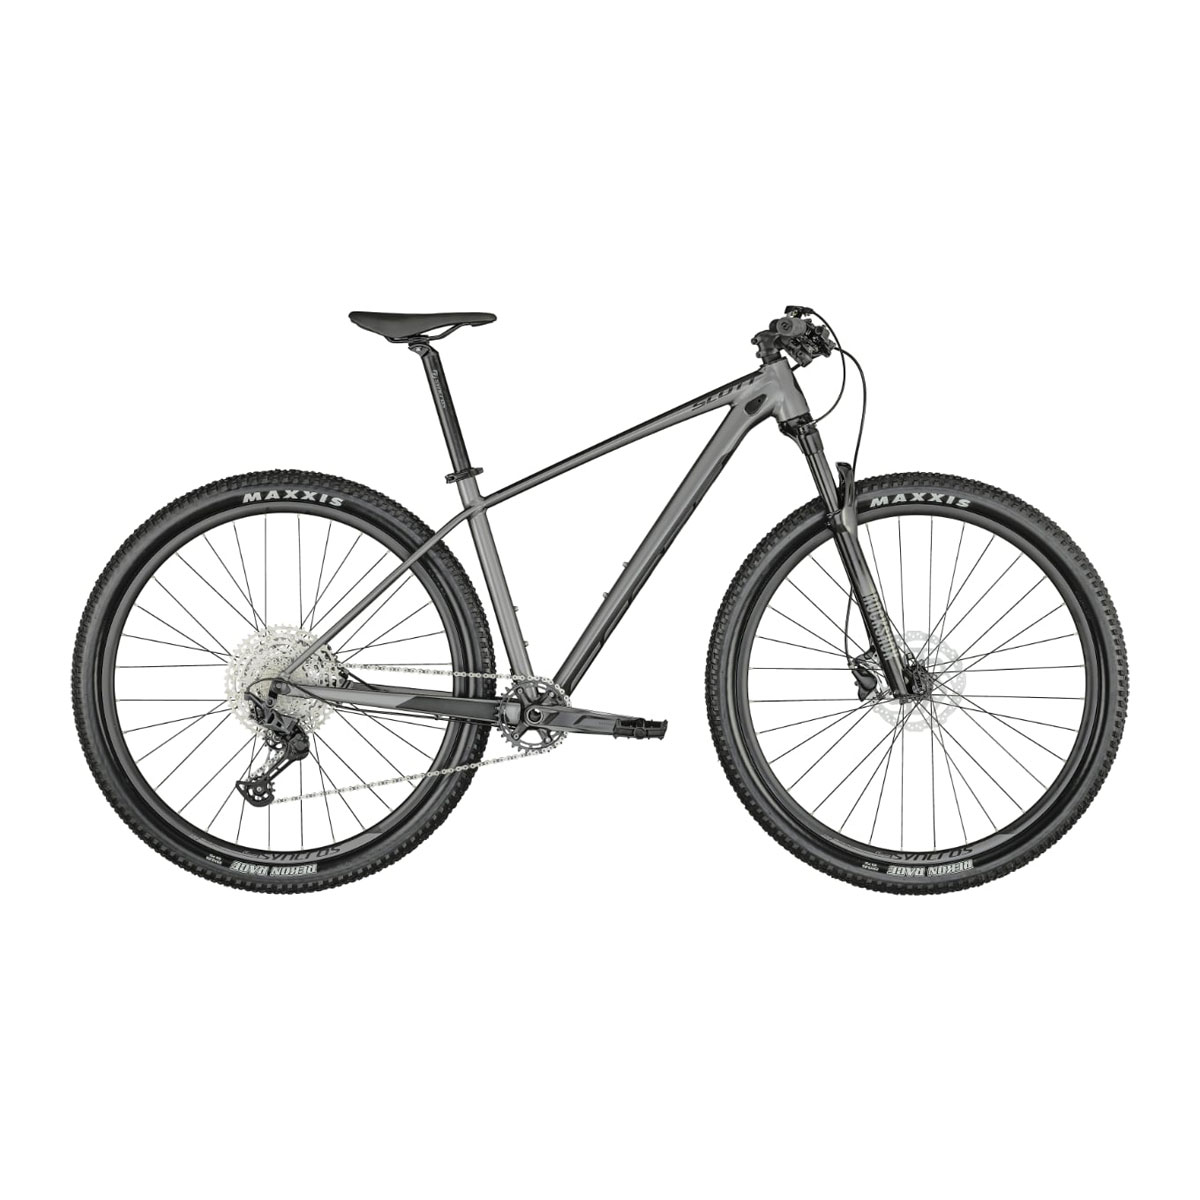 نکته خرید - قیمت روز دوچرخه کوهستان اسکات مدل اسکیل 965 2021 سایز طوقه 29 خرید